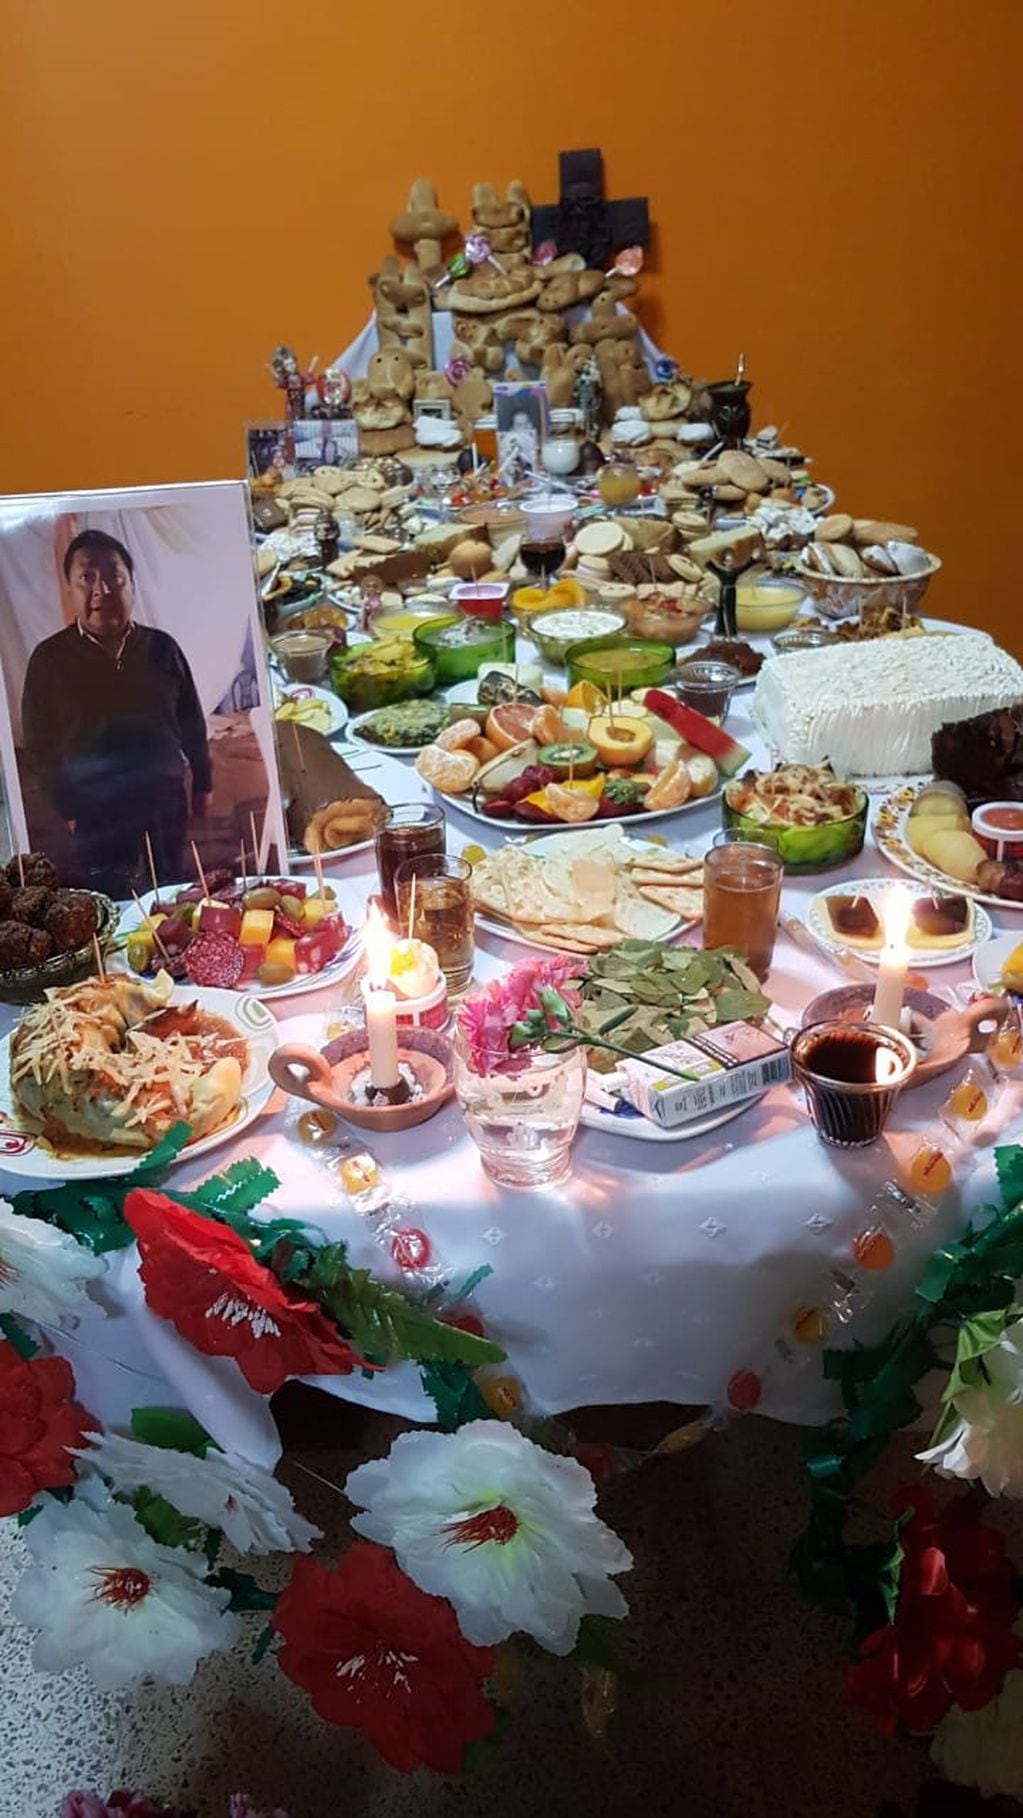 La familia Fernández de Humahuaca compartió con Vía Jujuy su mesa de ofrendas